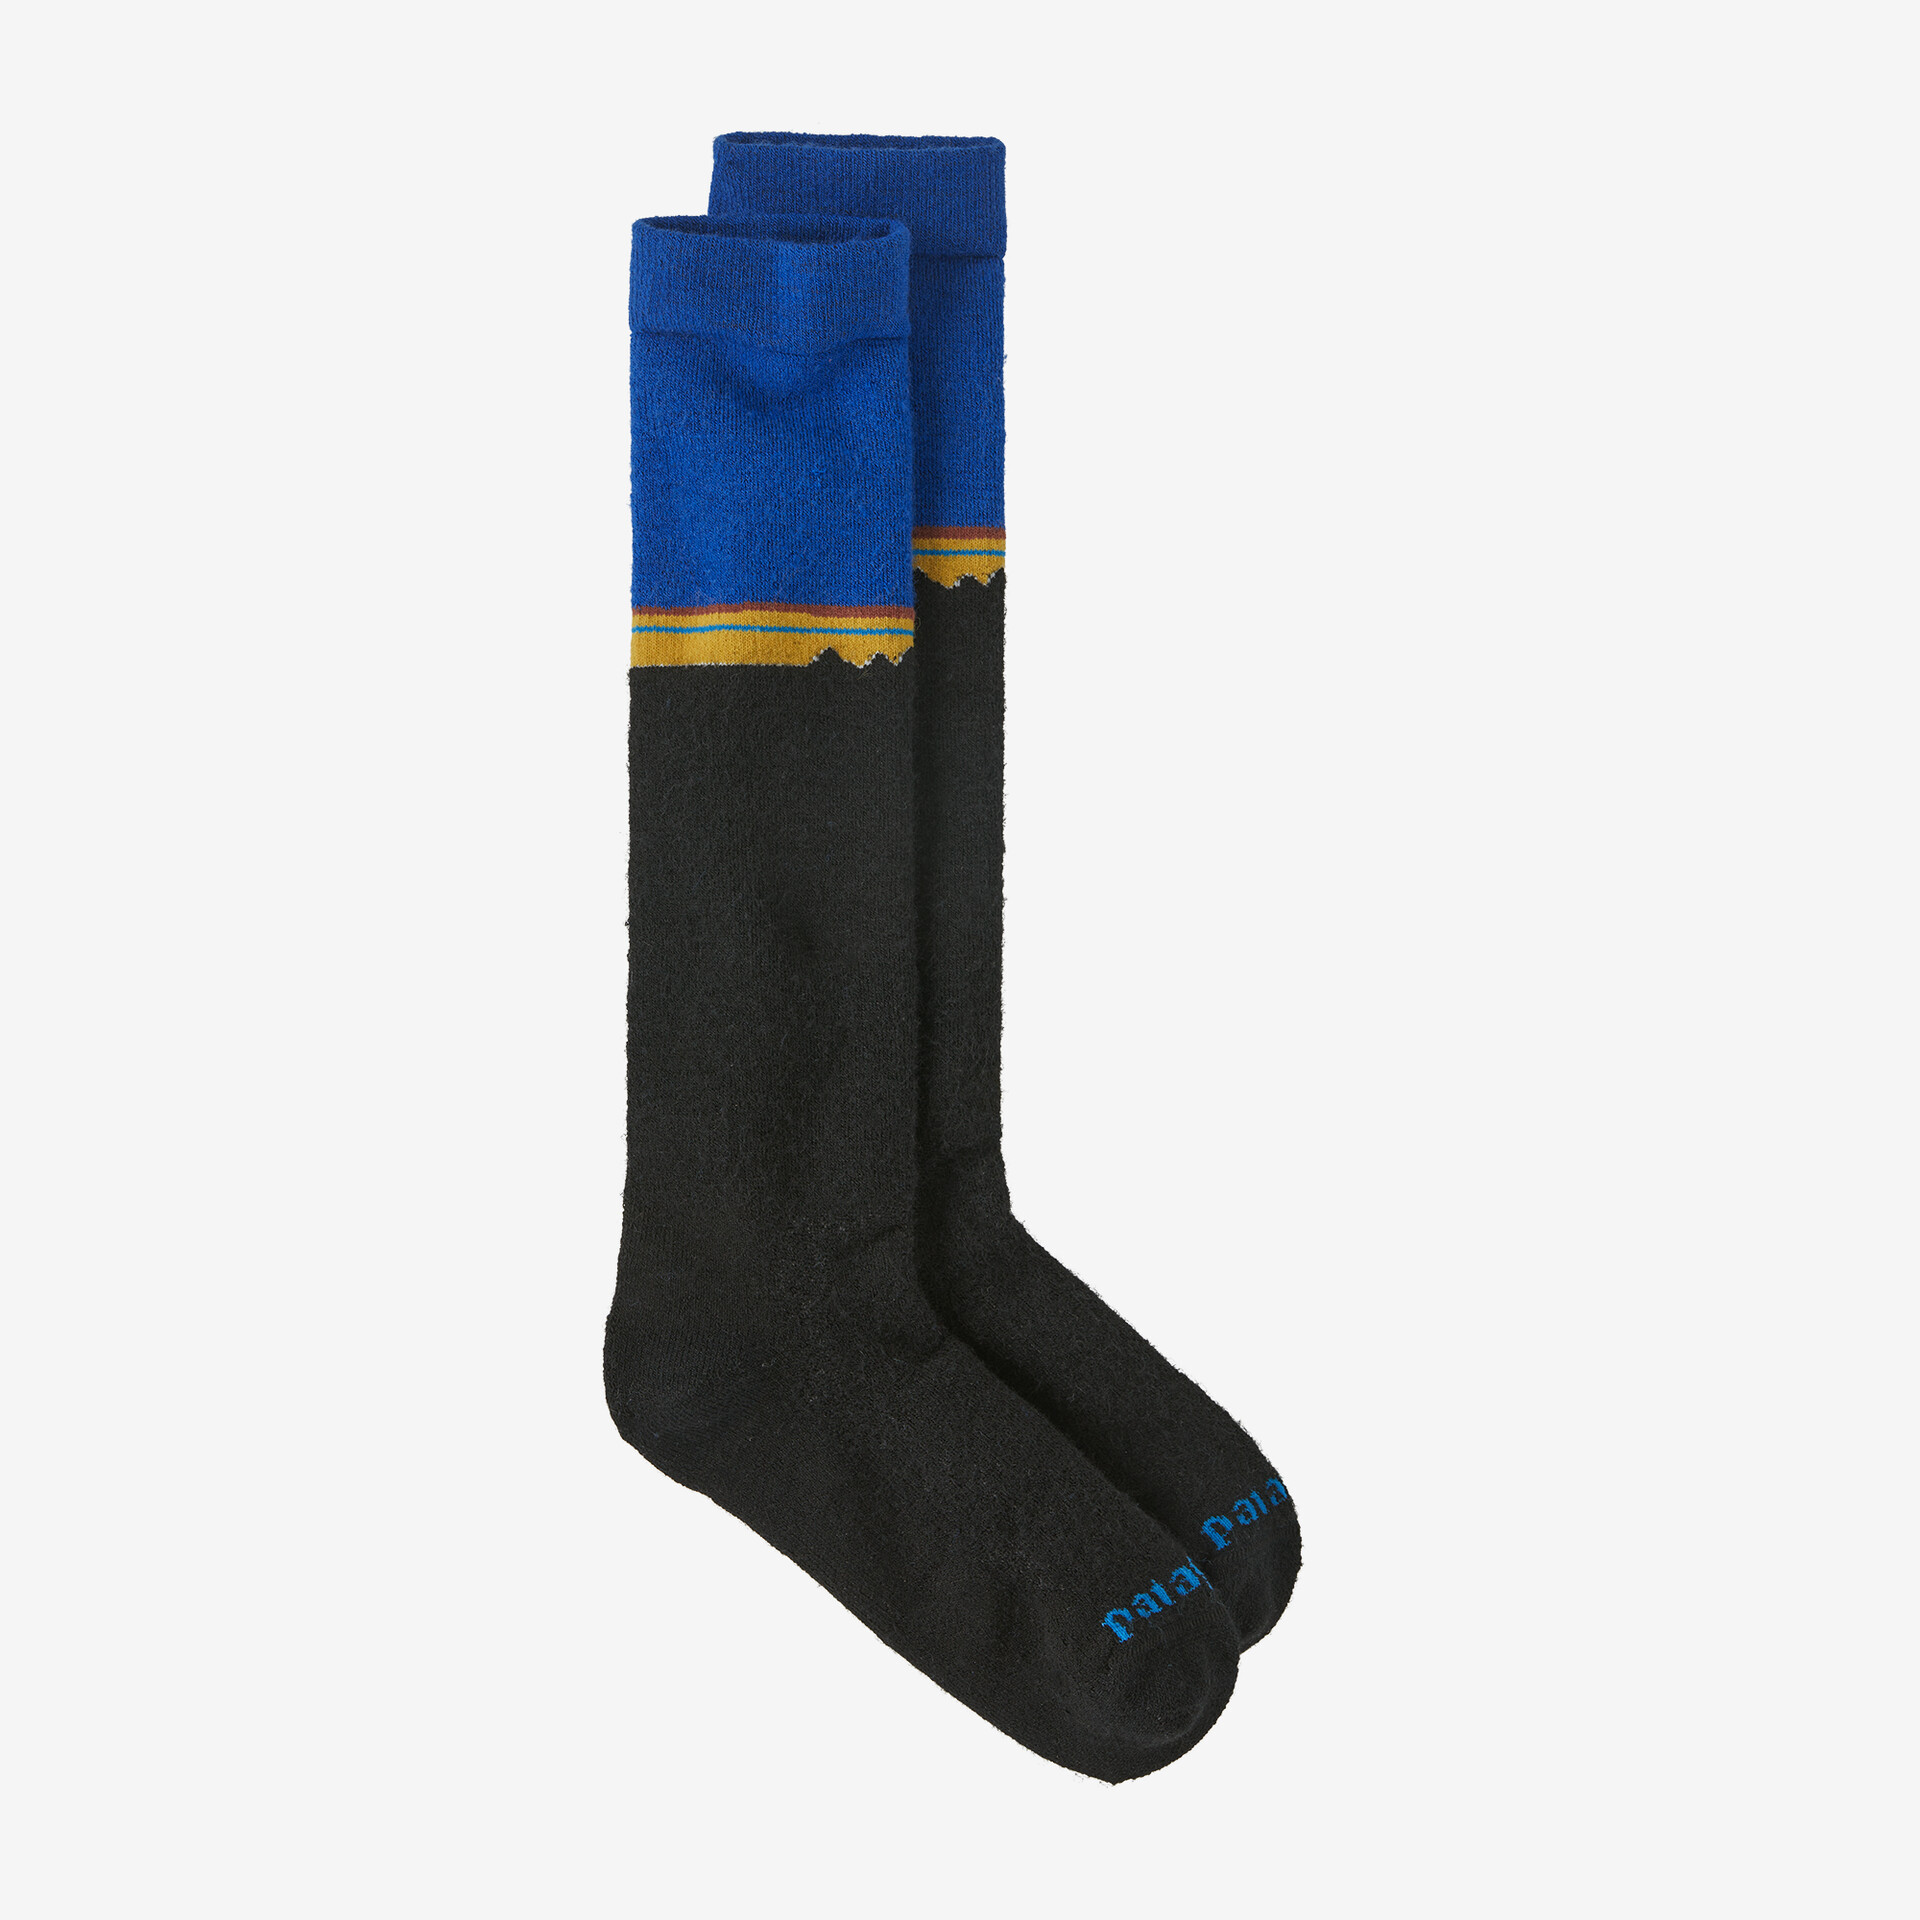 Носки из плотной шерсти Patagonia, цвет Classic Fitz Roy: Viking Blue носки мужские из мериносовой шерсти супертолстые теплые зимние плюшевые сапоги тяжелые мягкие удобные для холодной погоды